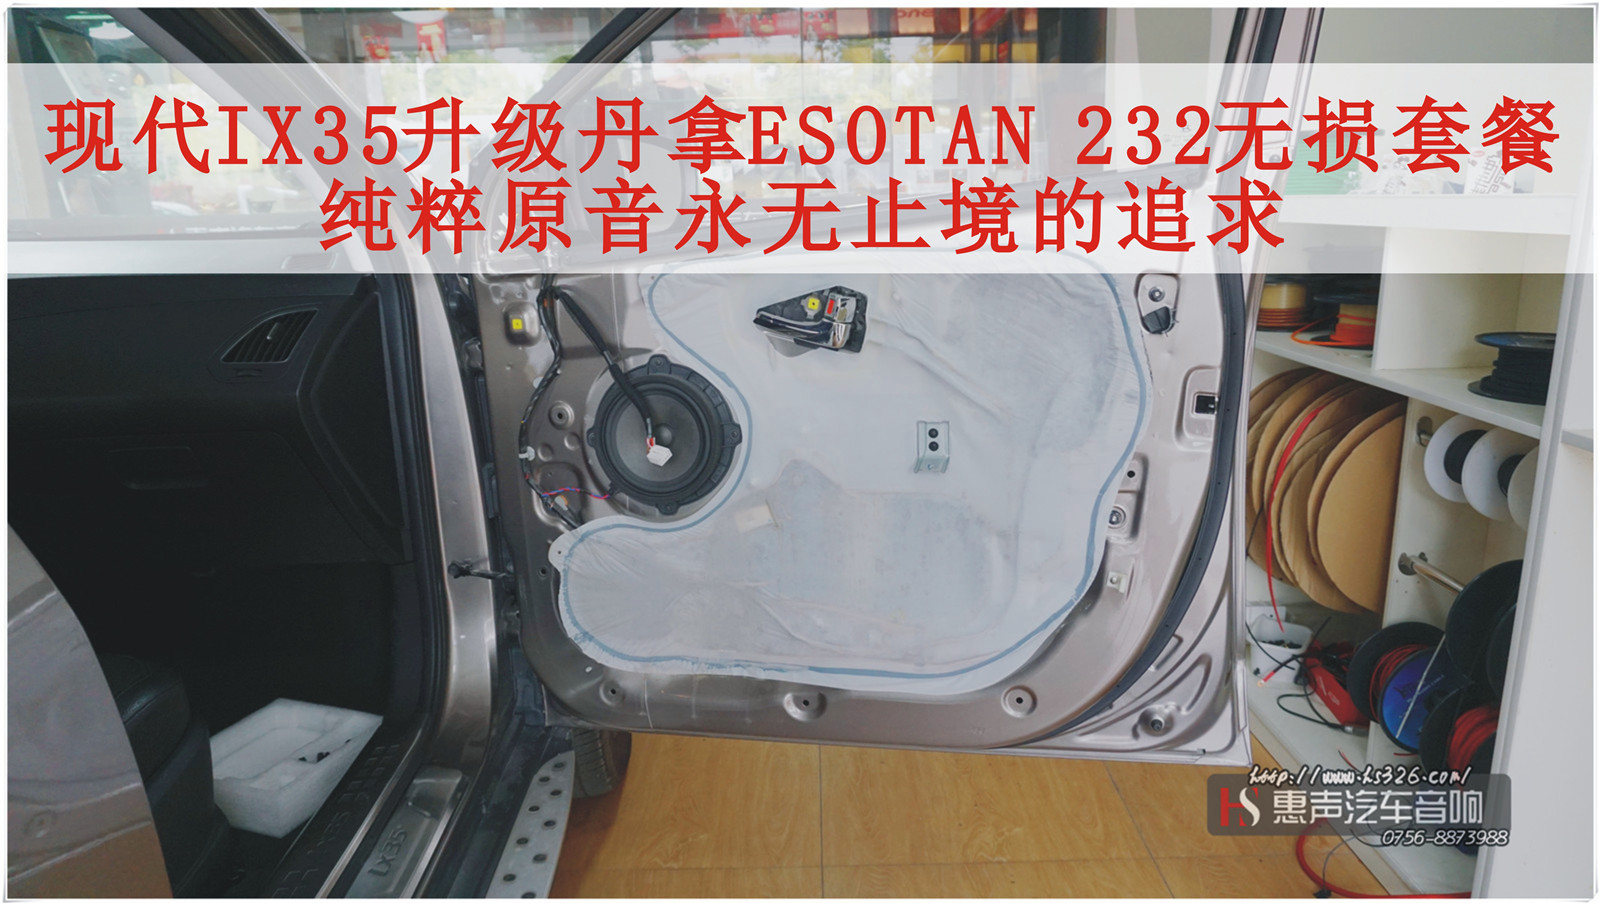 北京现代IX35 升级丹拿ESOTAN 232